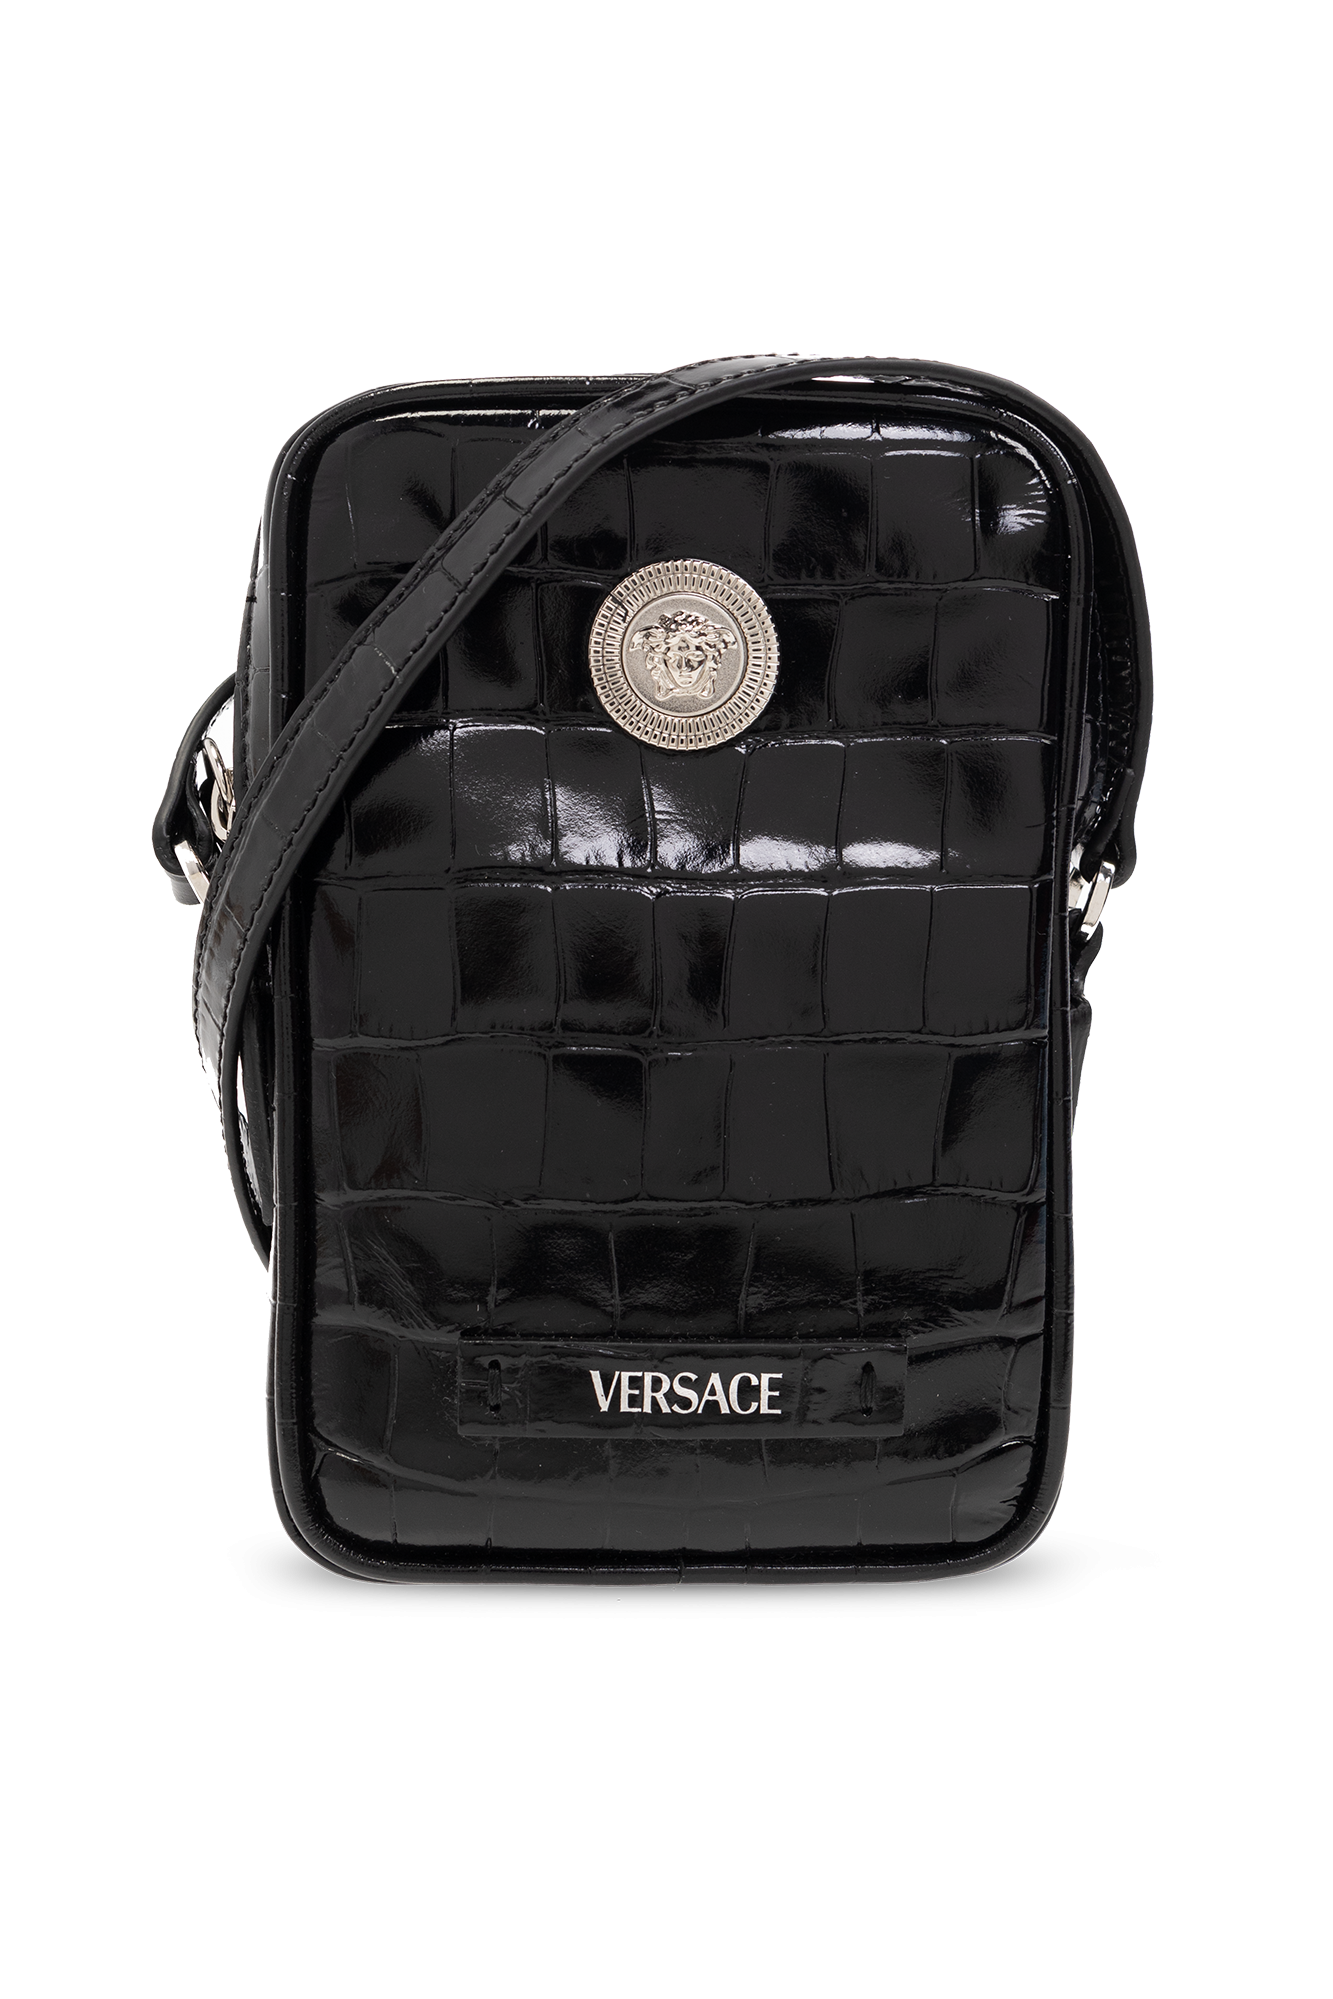 Versace Shoulder bag with Medusa face